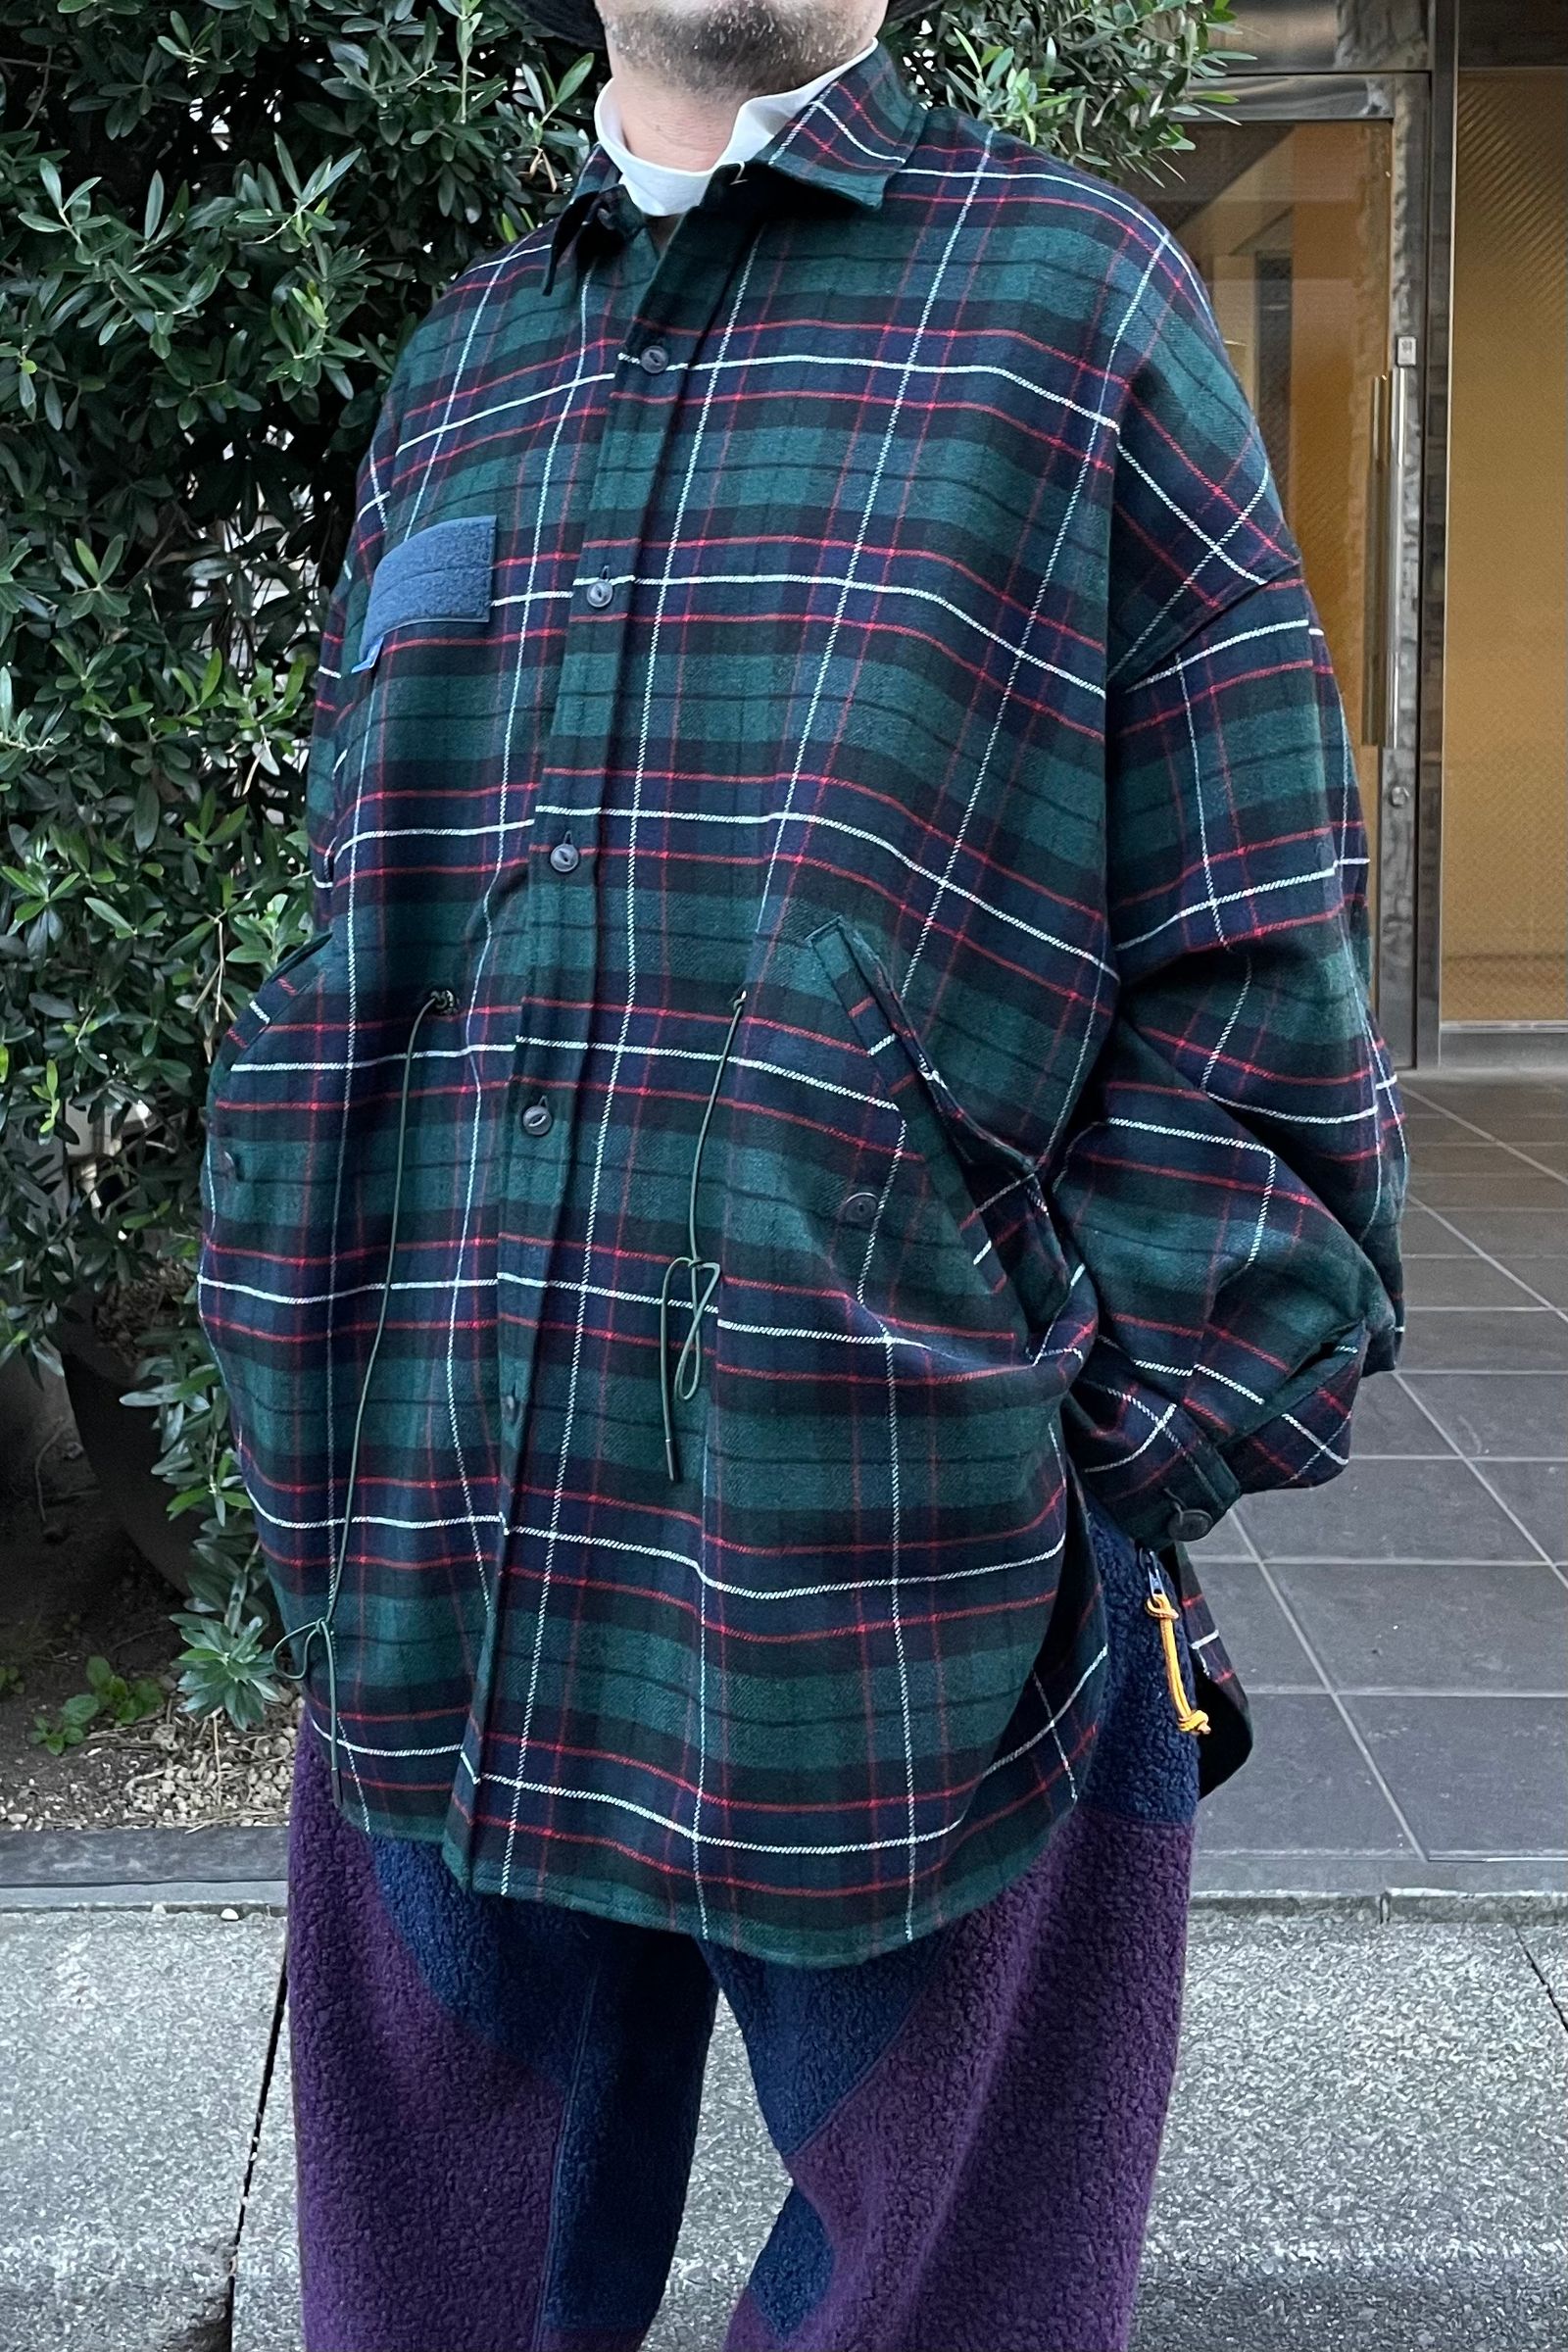 FUMITO GANRYU - m-51 shirt jacket -green check- 22aw | asterisk